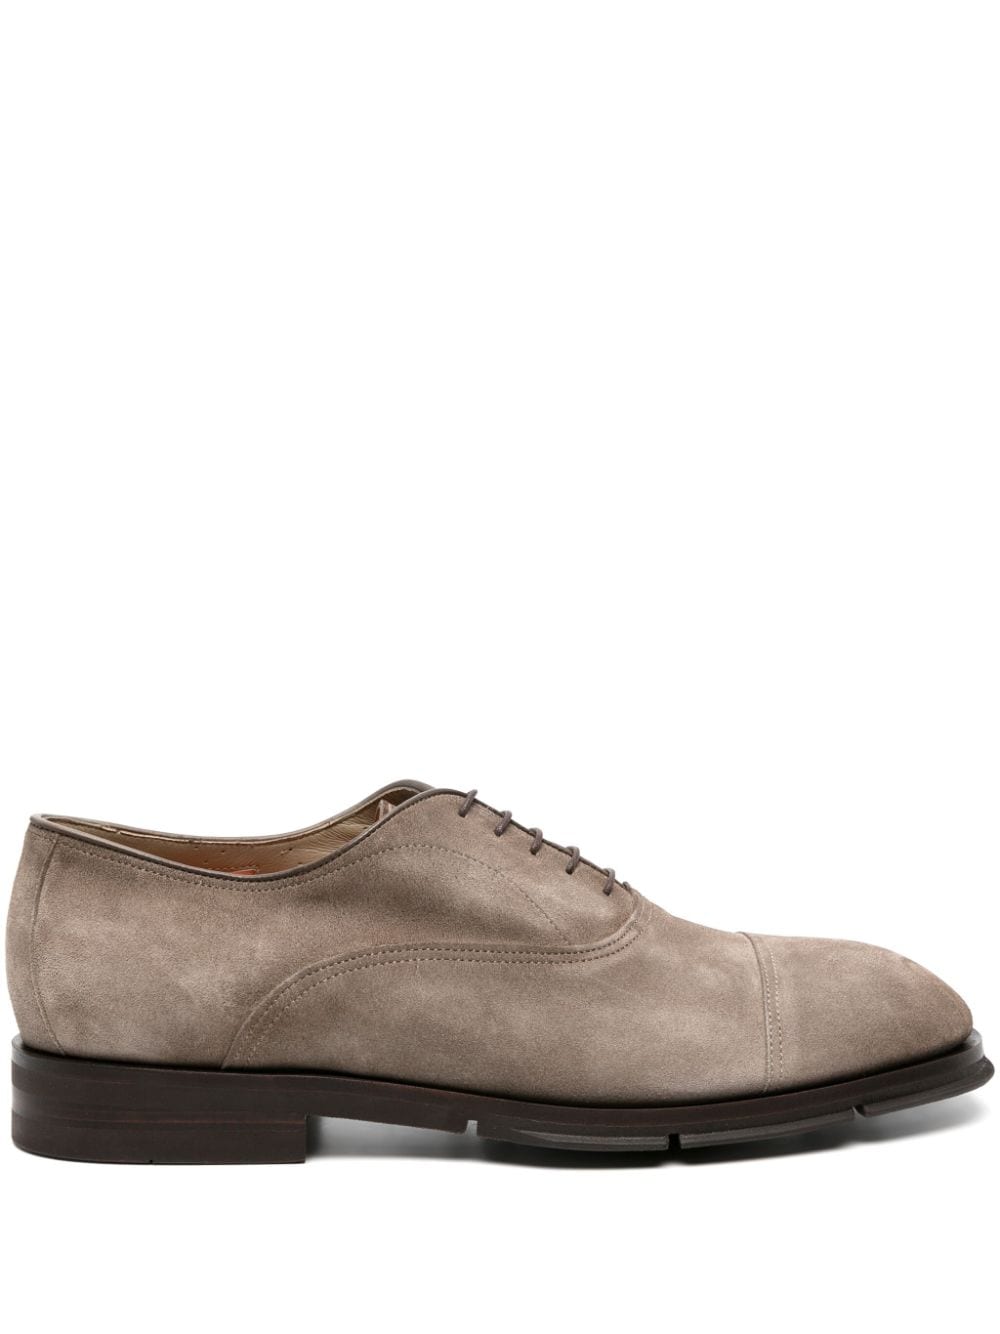 Santoni suede oxford shoes - Grey von Santoni